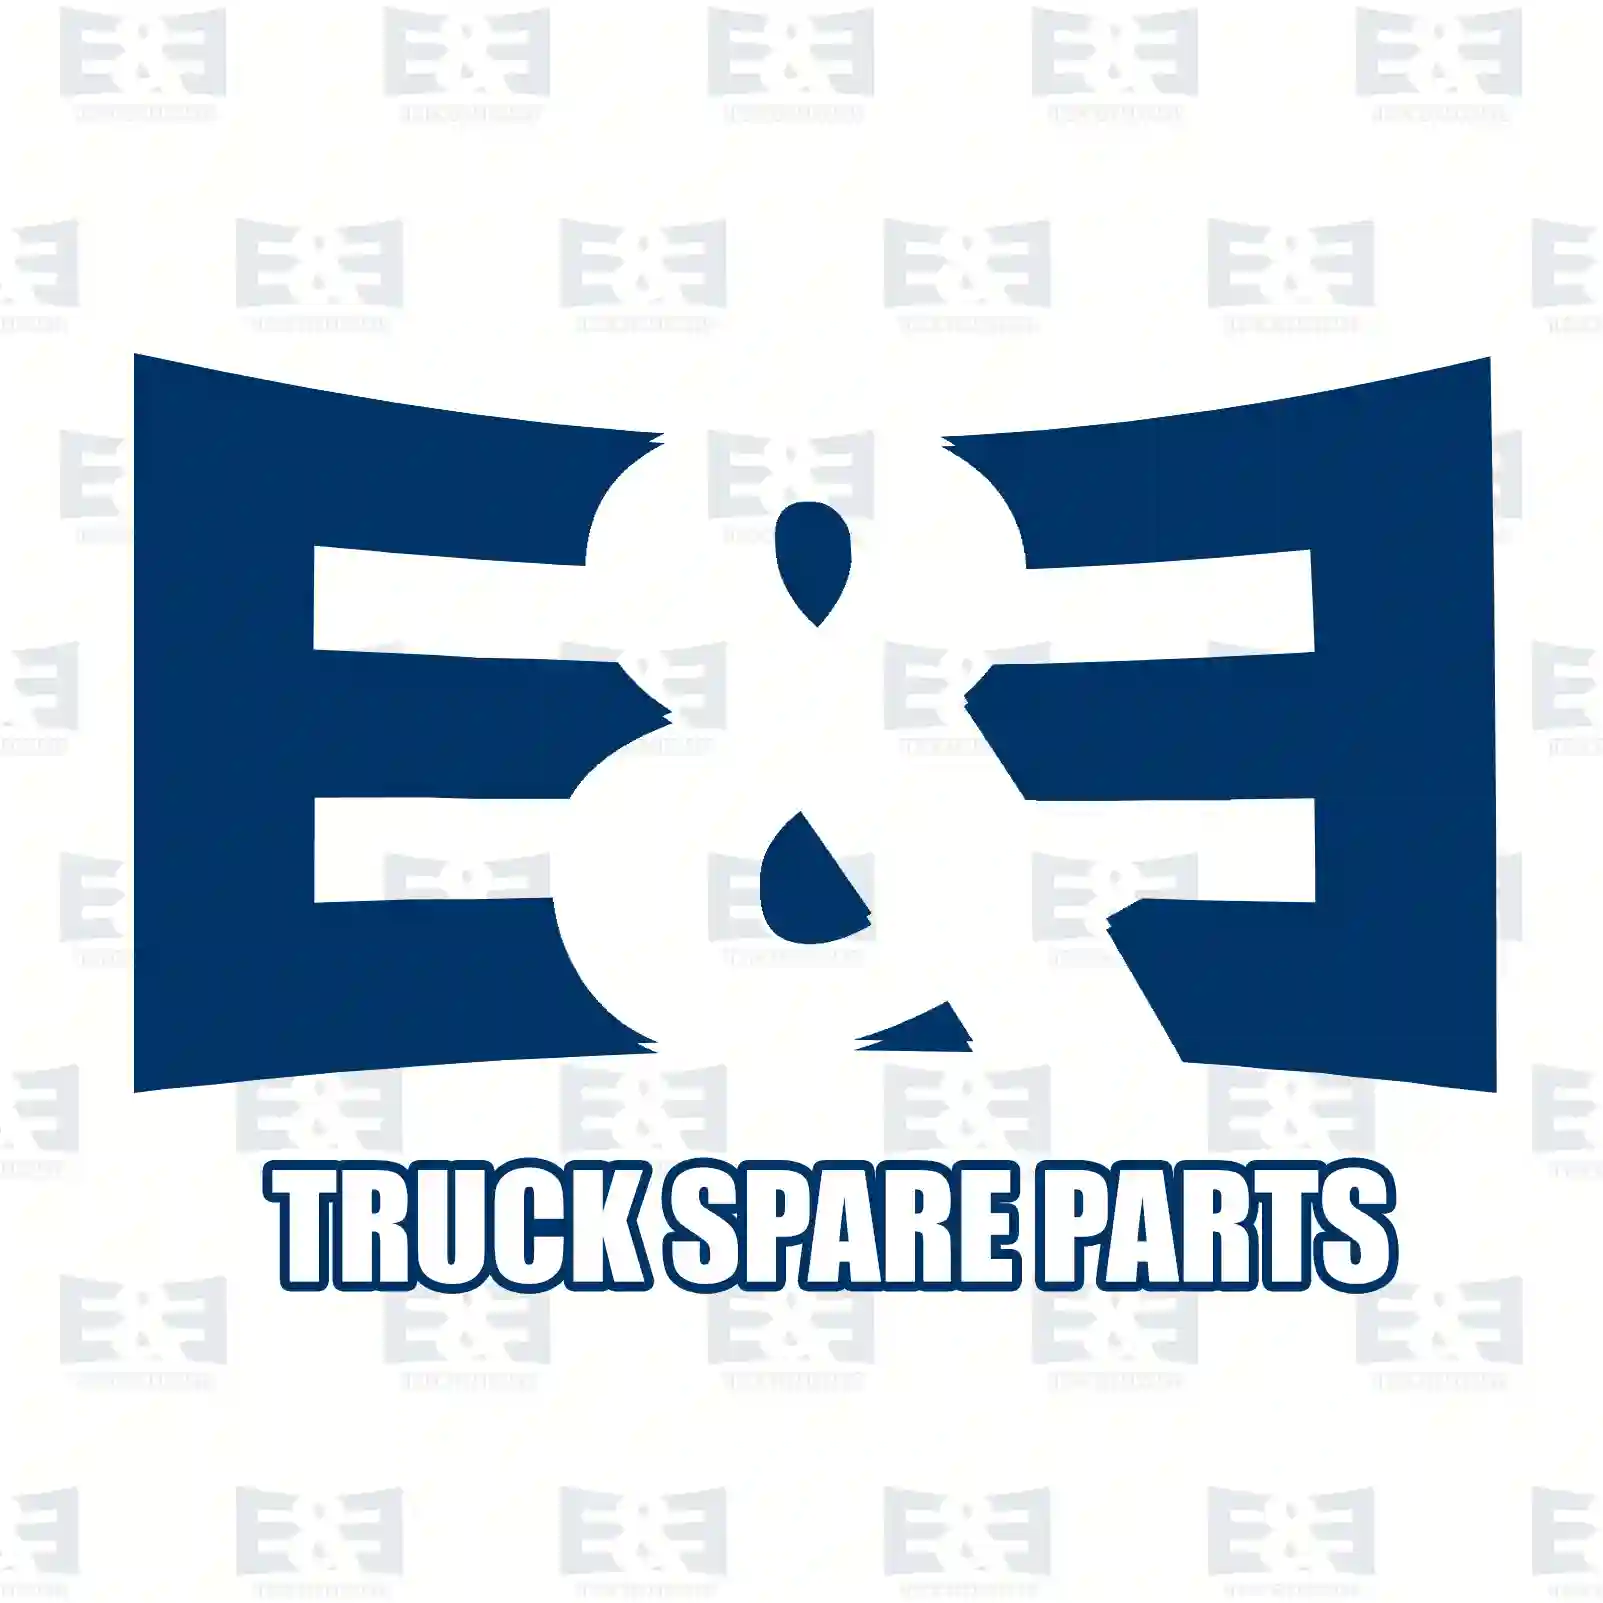 Castle nut, 2E2281348, 811911, 816089, ZG41229-0008 ||  2E2281348 E&E Truck Spare Parts | Truck Spare Parts, Auotomotive Spare Parts Castle nut, 2E2281348, 811911, 816089, ZG41229-0008 ||  2E2281348 E&E Truck Spare Parts | Truck Spare Parts, Auotomotive Spare Parts